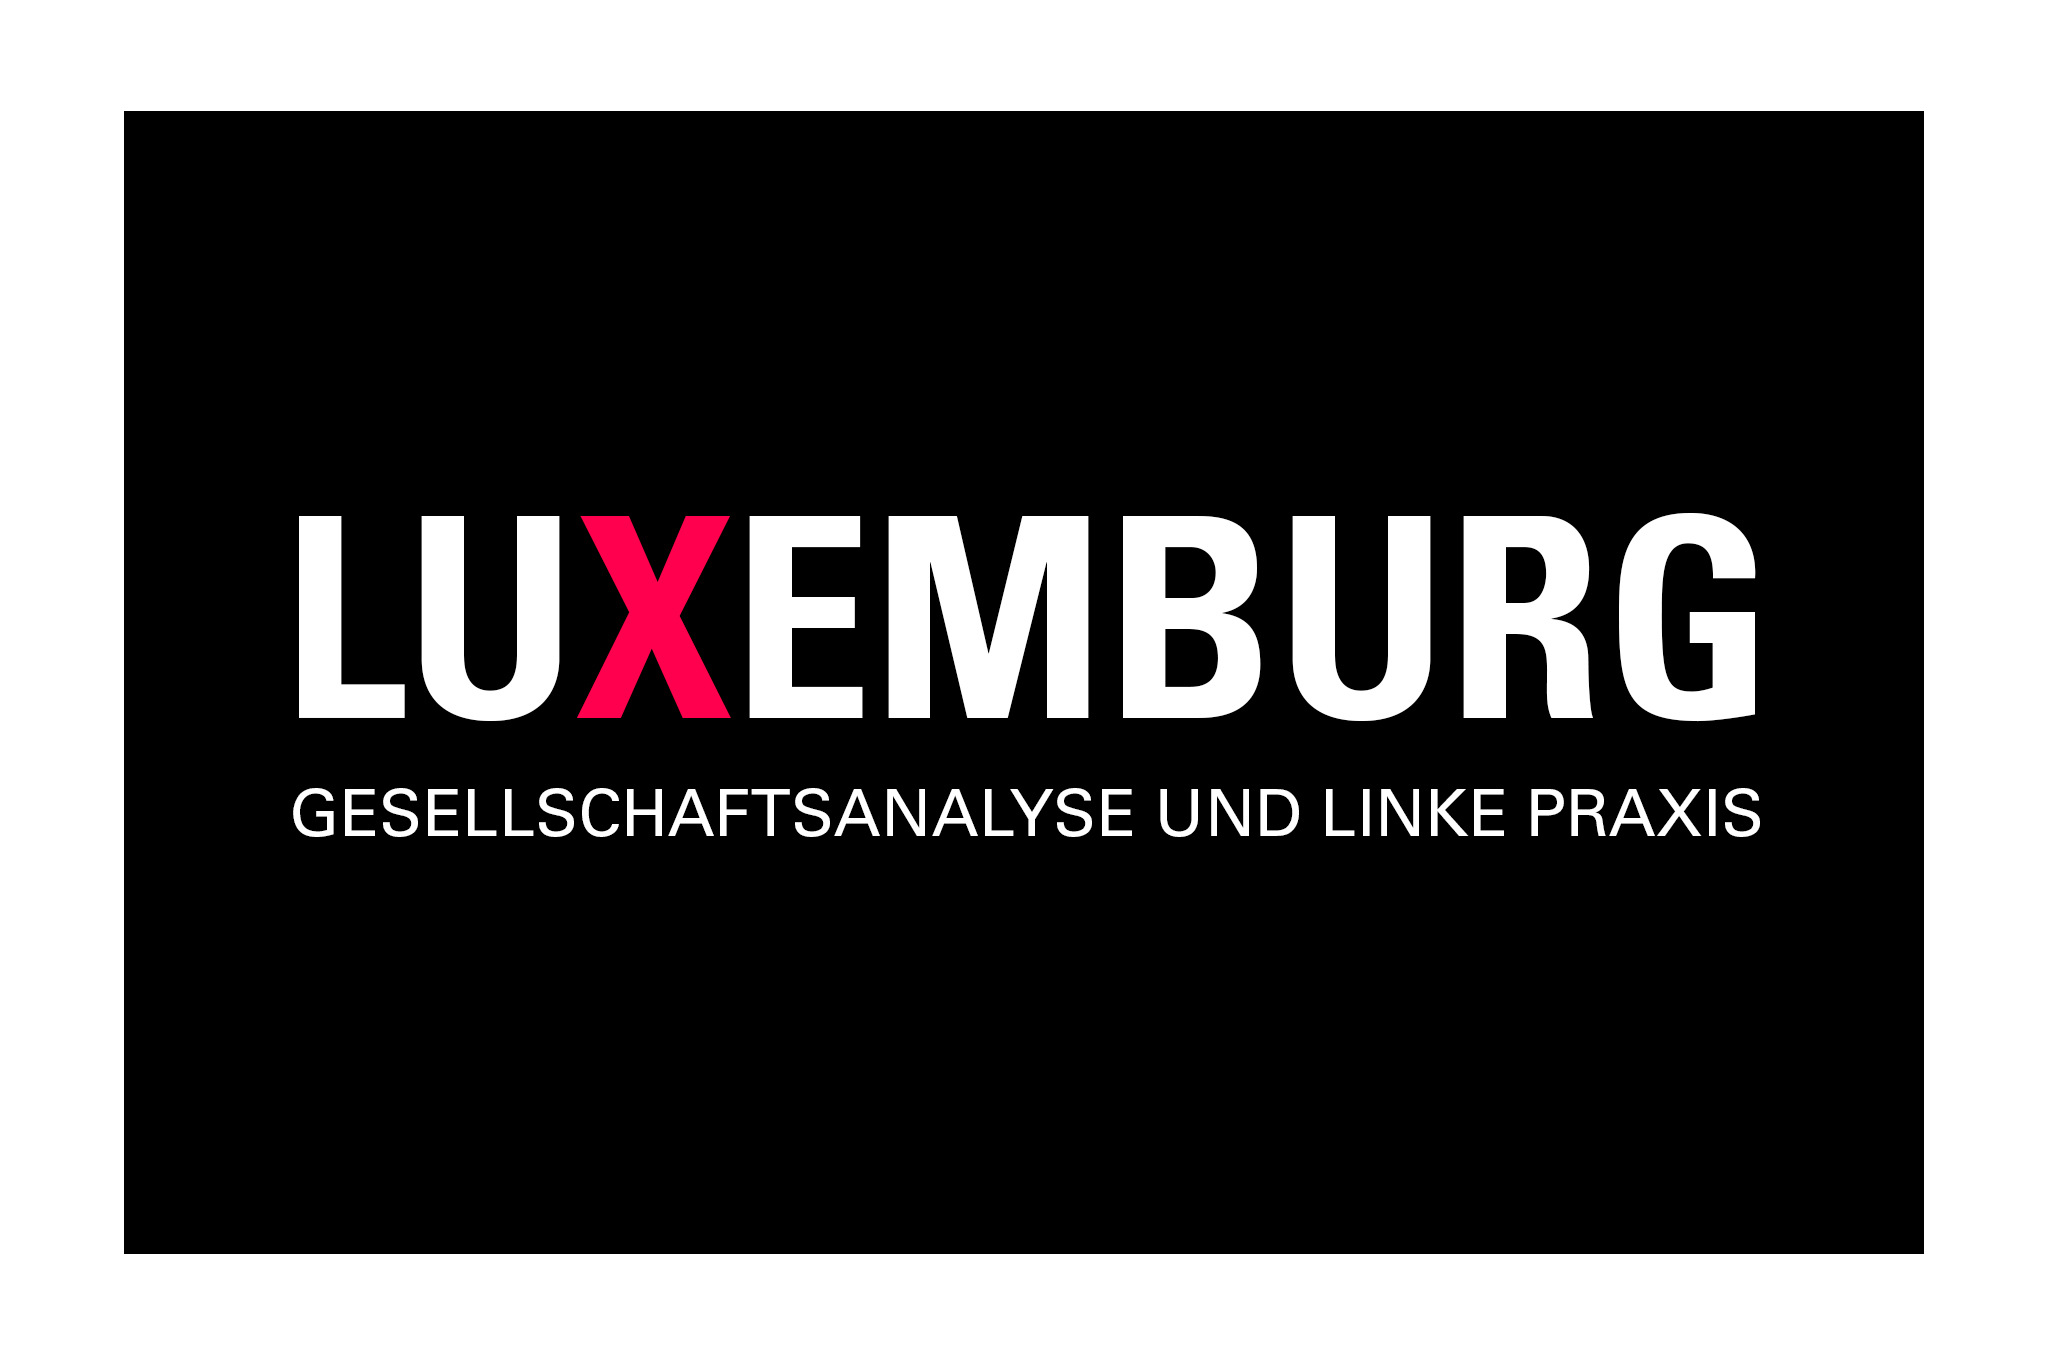 LuXemburg: Unangepasst - Die Zukunft wird uns mehr Hitzewellen, Extremwetter und Umweltkrisen bringen